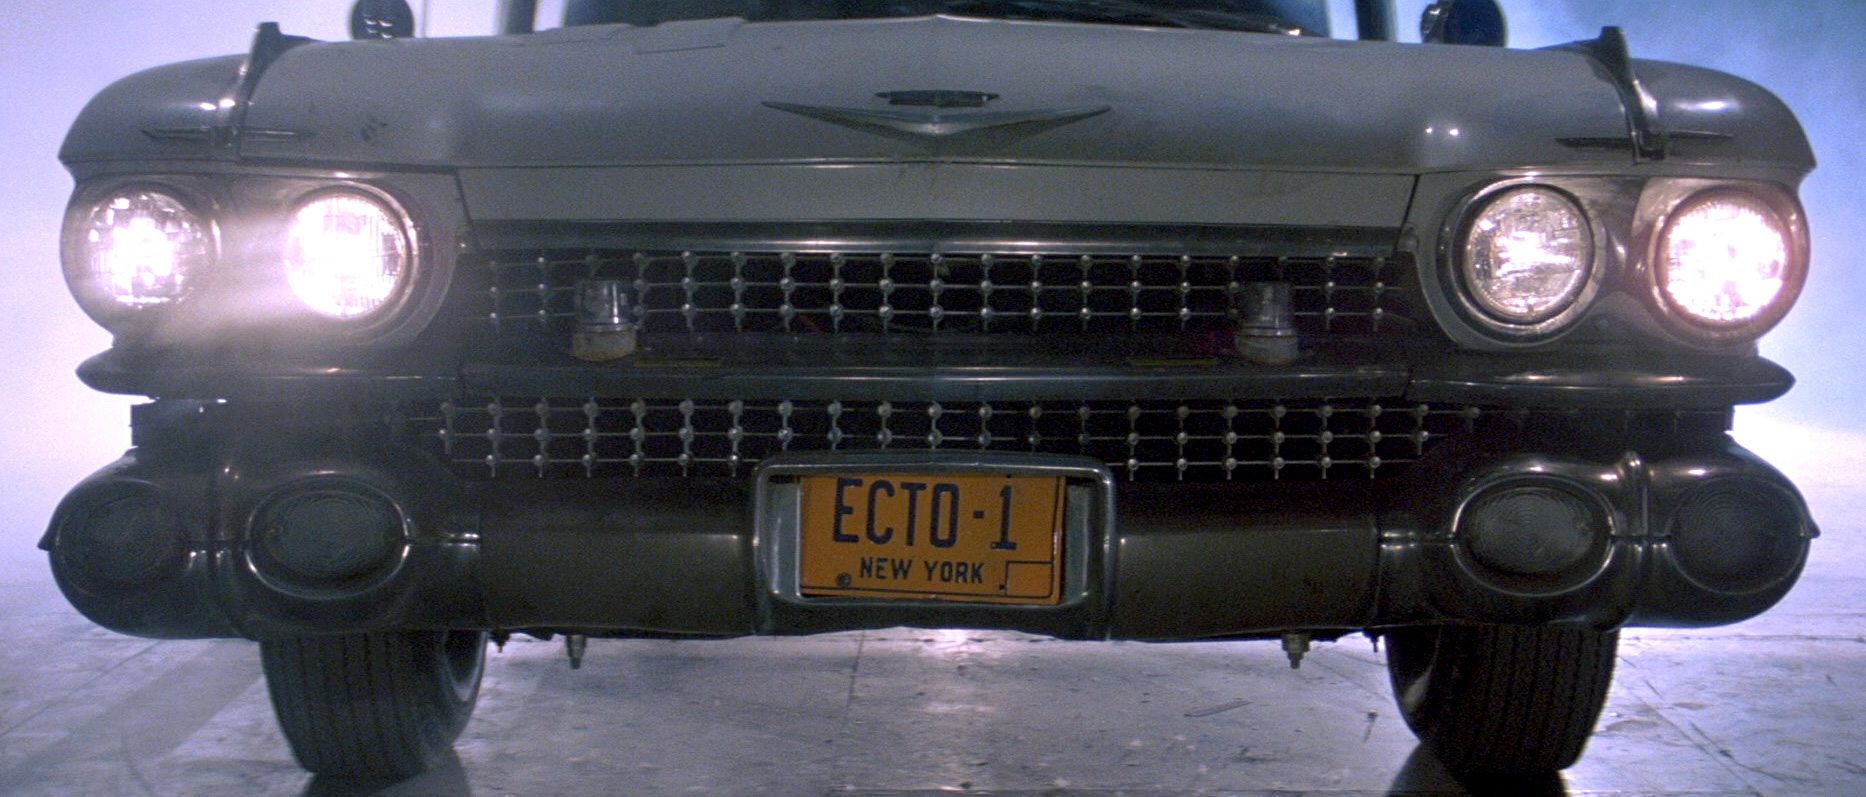 ecto 1 license plate printable